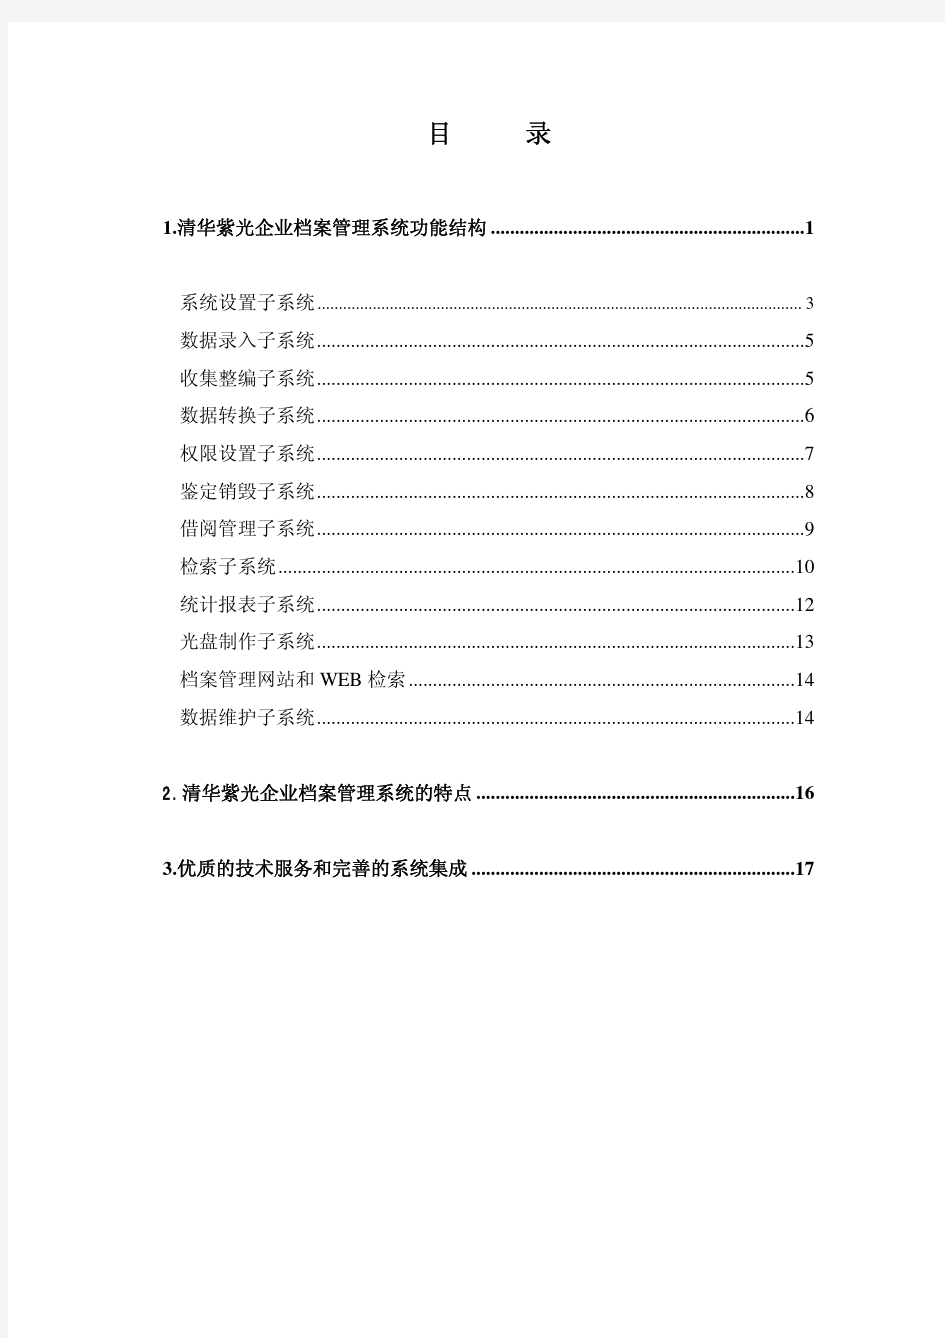 清华紫光企业档案管理系统